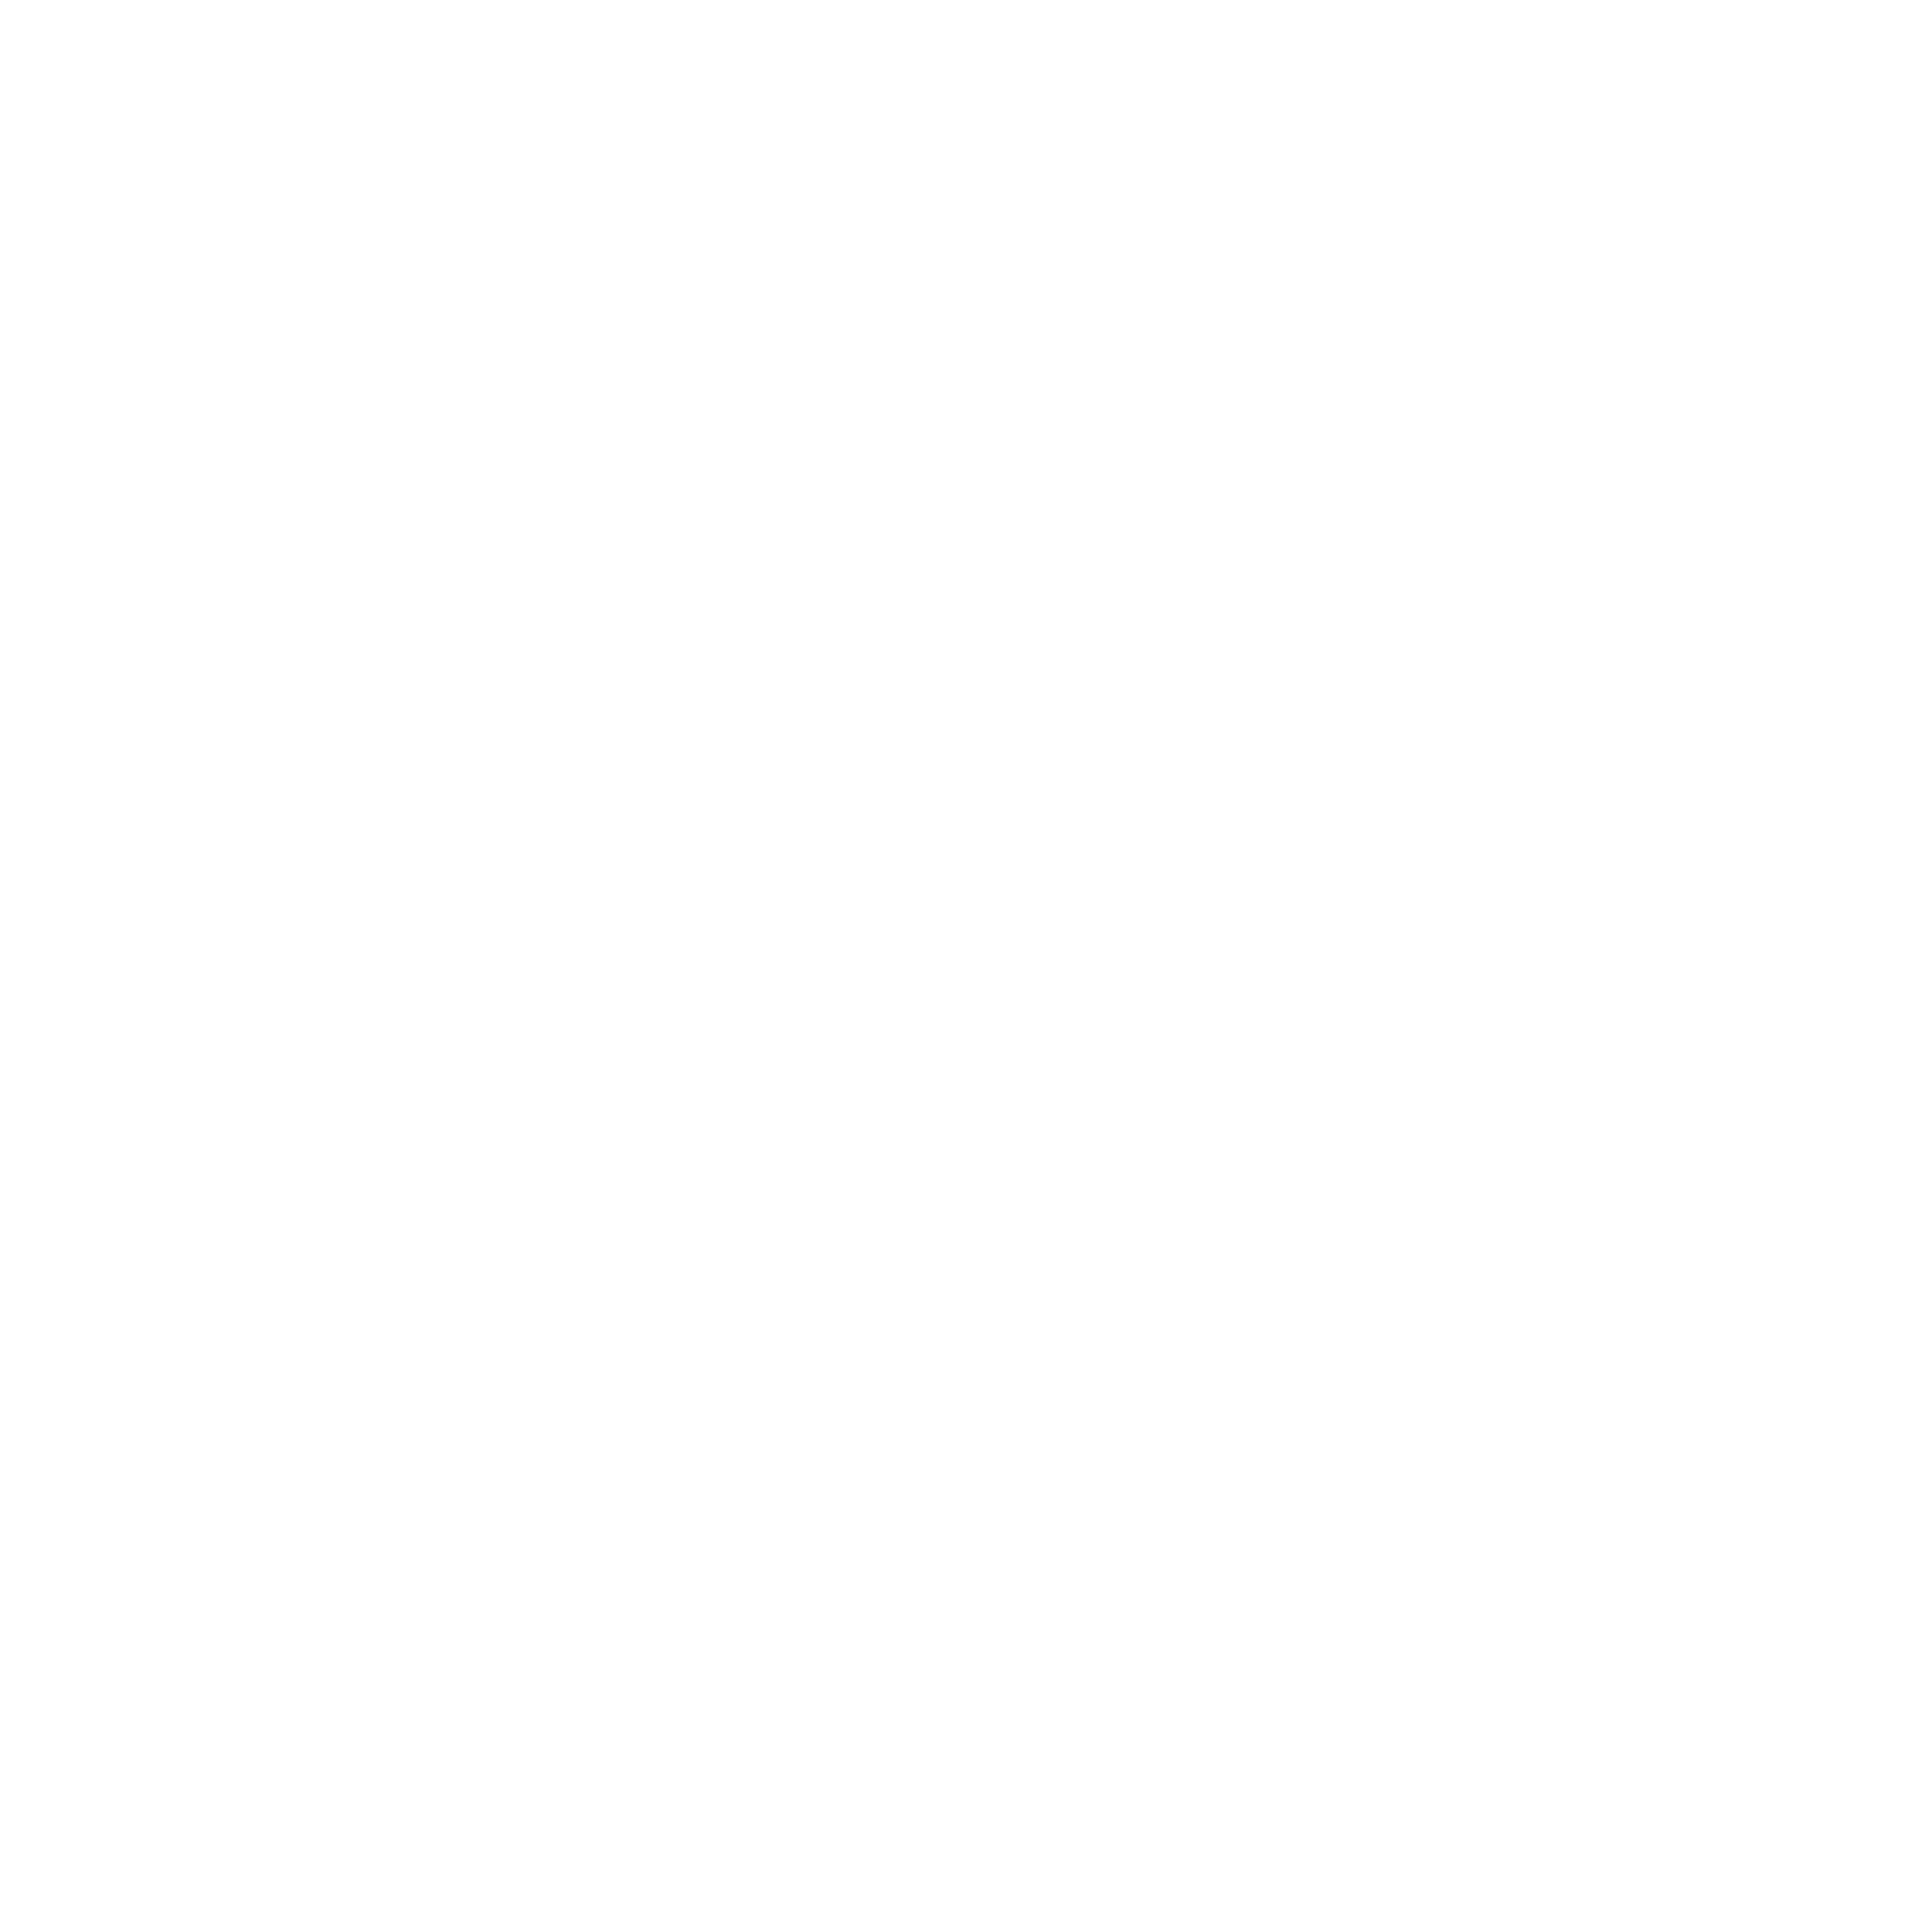 ambl-white-01.png